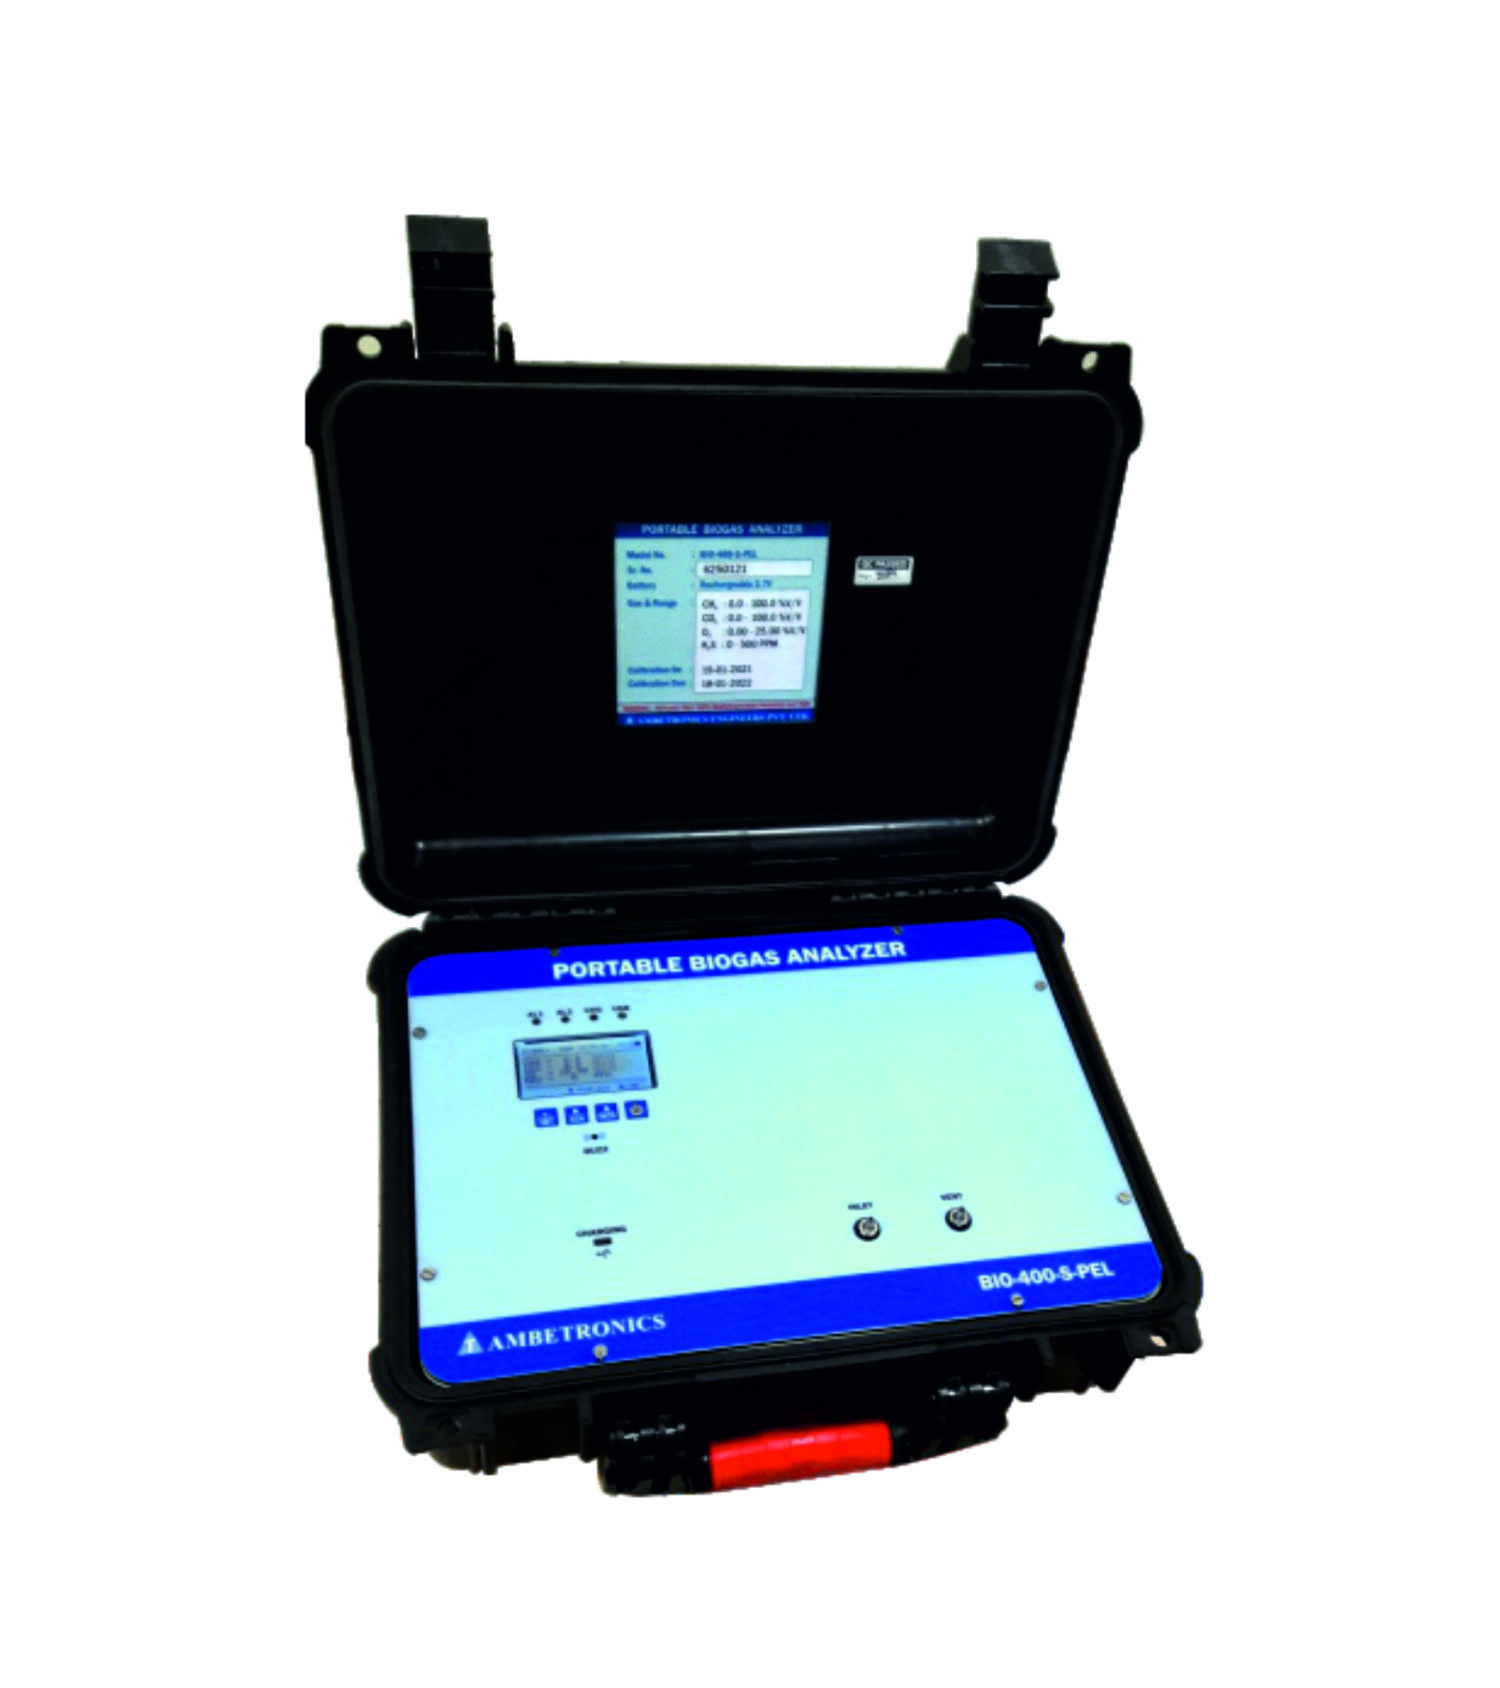 portable biogas analyzer, portable biogas detector